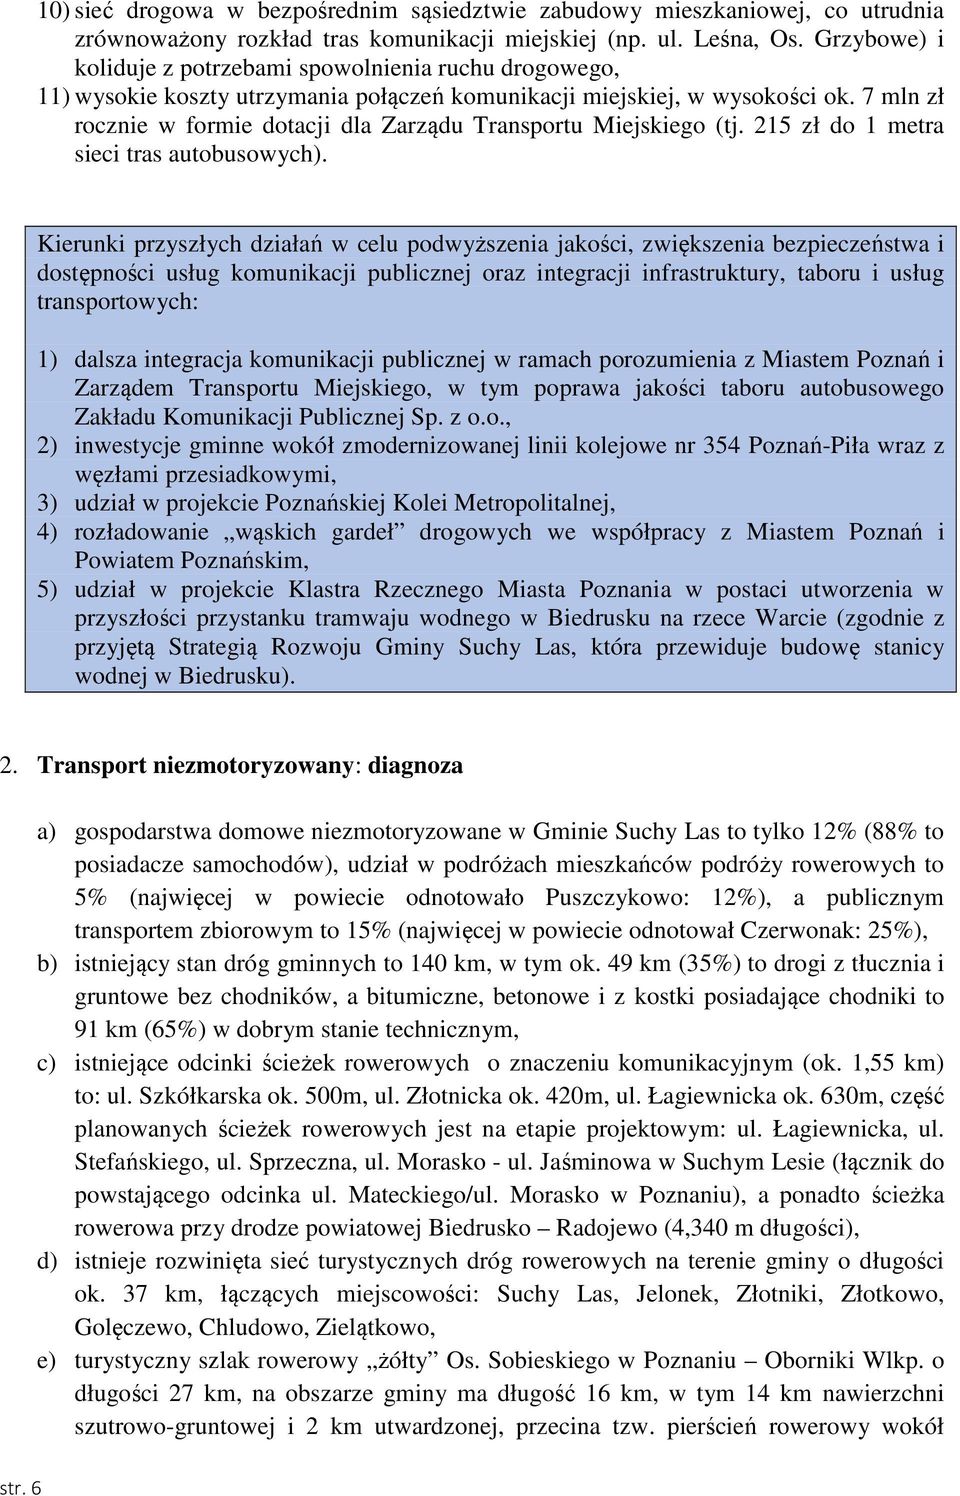 7 mln zł rocznie w formie dotacji dla Zarządu Transportu Miejskiego (tj. 215 zł do 1 metra sieci tras autobusowych).